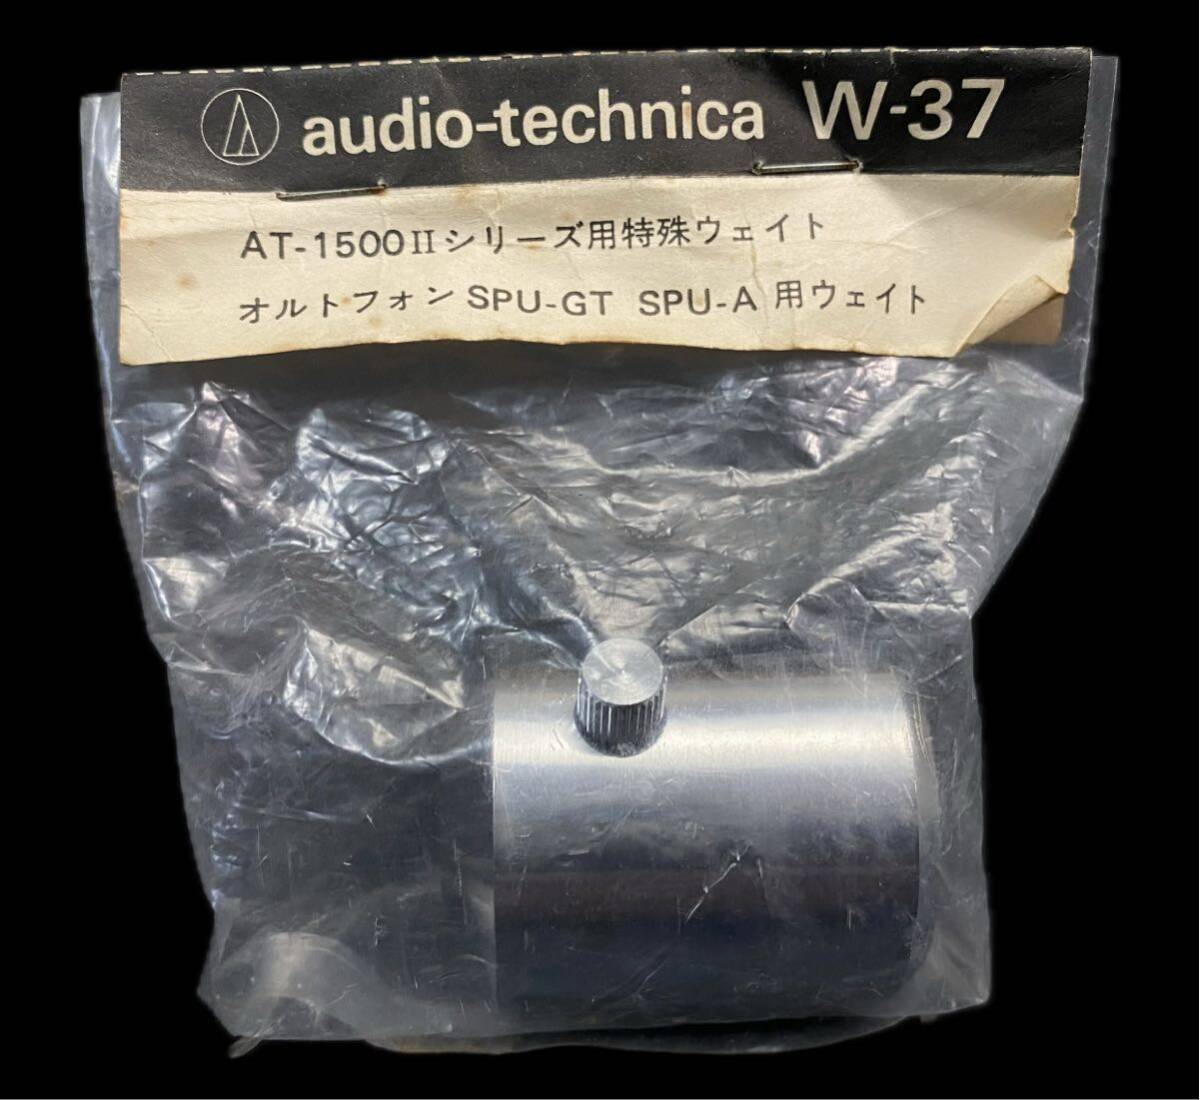 SG-524 レコード 用品 4点set DENON AD-3 スタビライザー ムサシノチェッカー3 audio-Technica ウェイト AT-1500Ⅱオルトフォン TEAC TZ-60_画像4